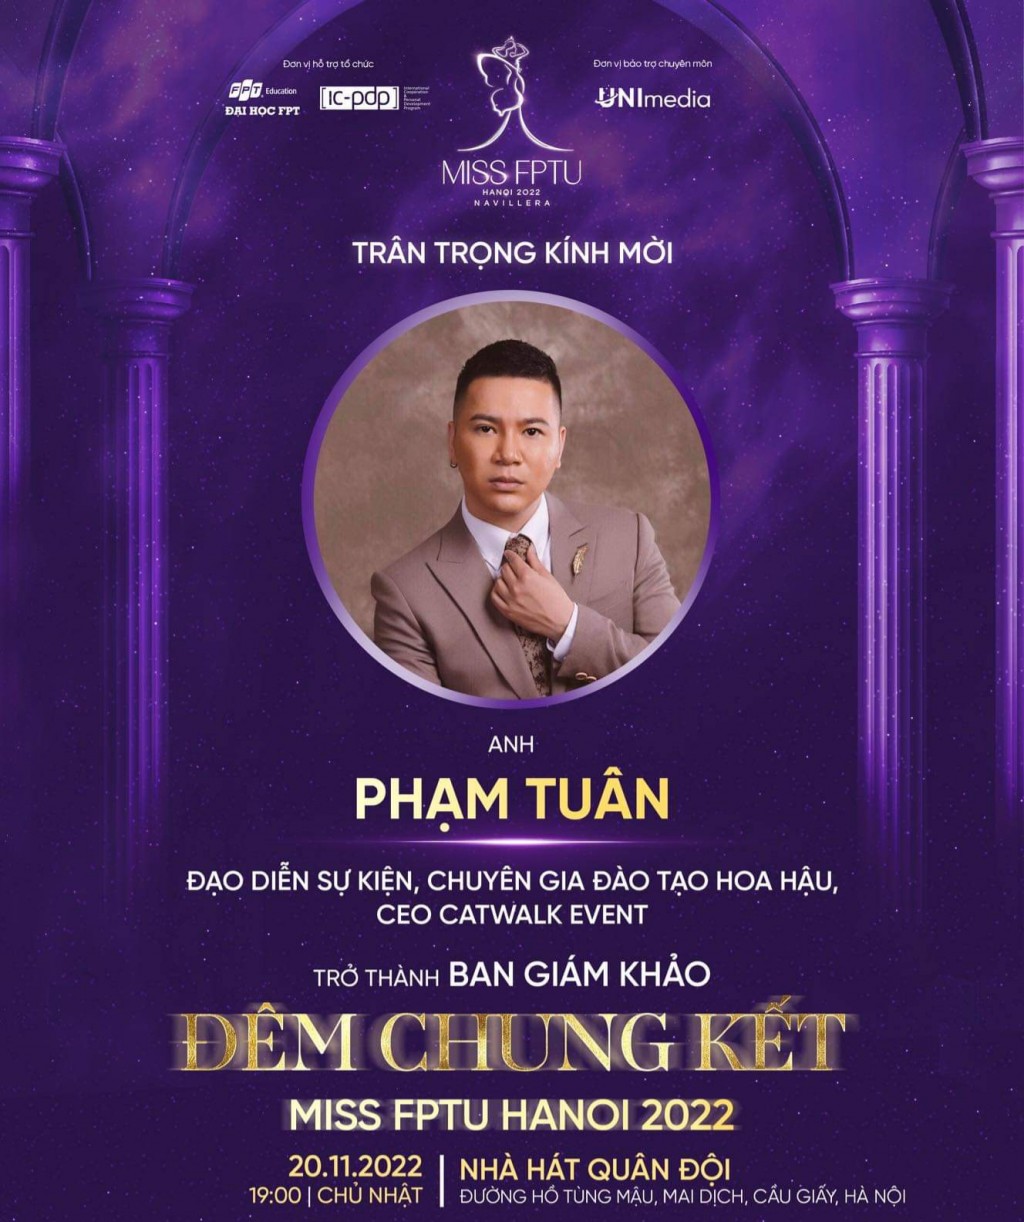 Chuyên gia đào tạo hoa hậu - Đạo diễn sự kiện Phạm Tuân trên poster công bố giám khảo của đêm chung kết